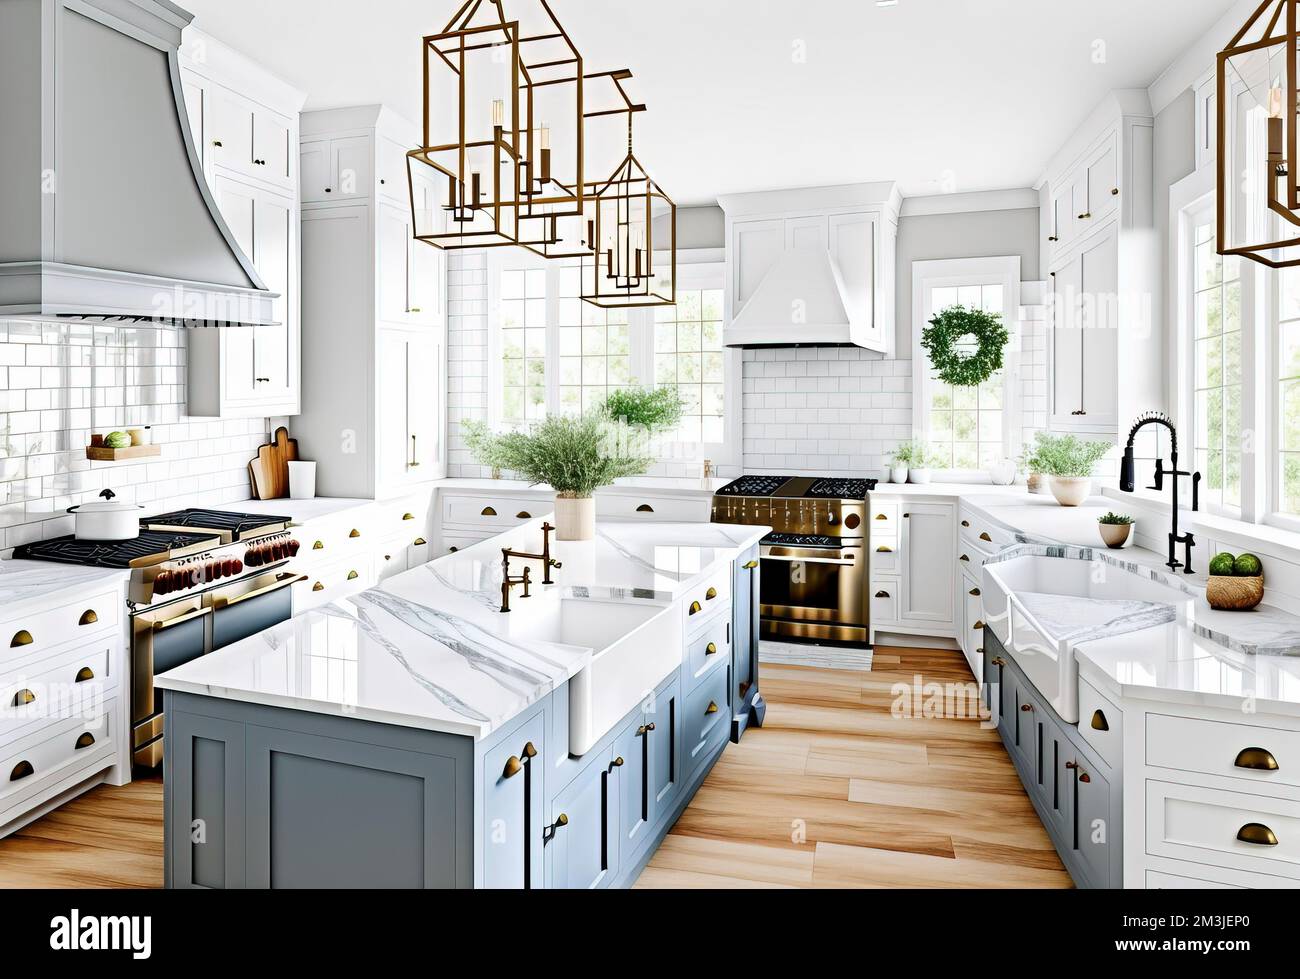 Modern kitchen interior design in a luxury house Stock Photo